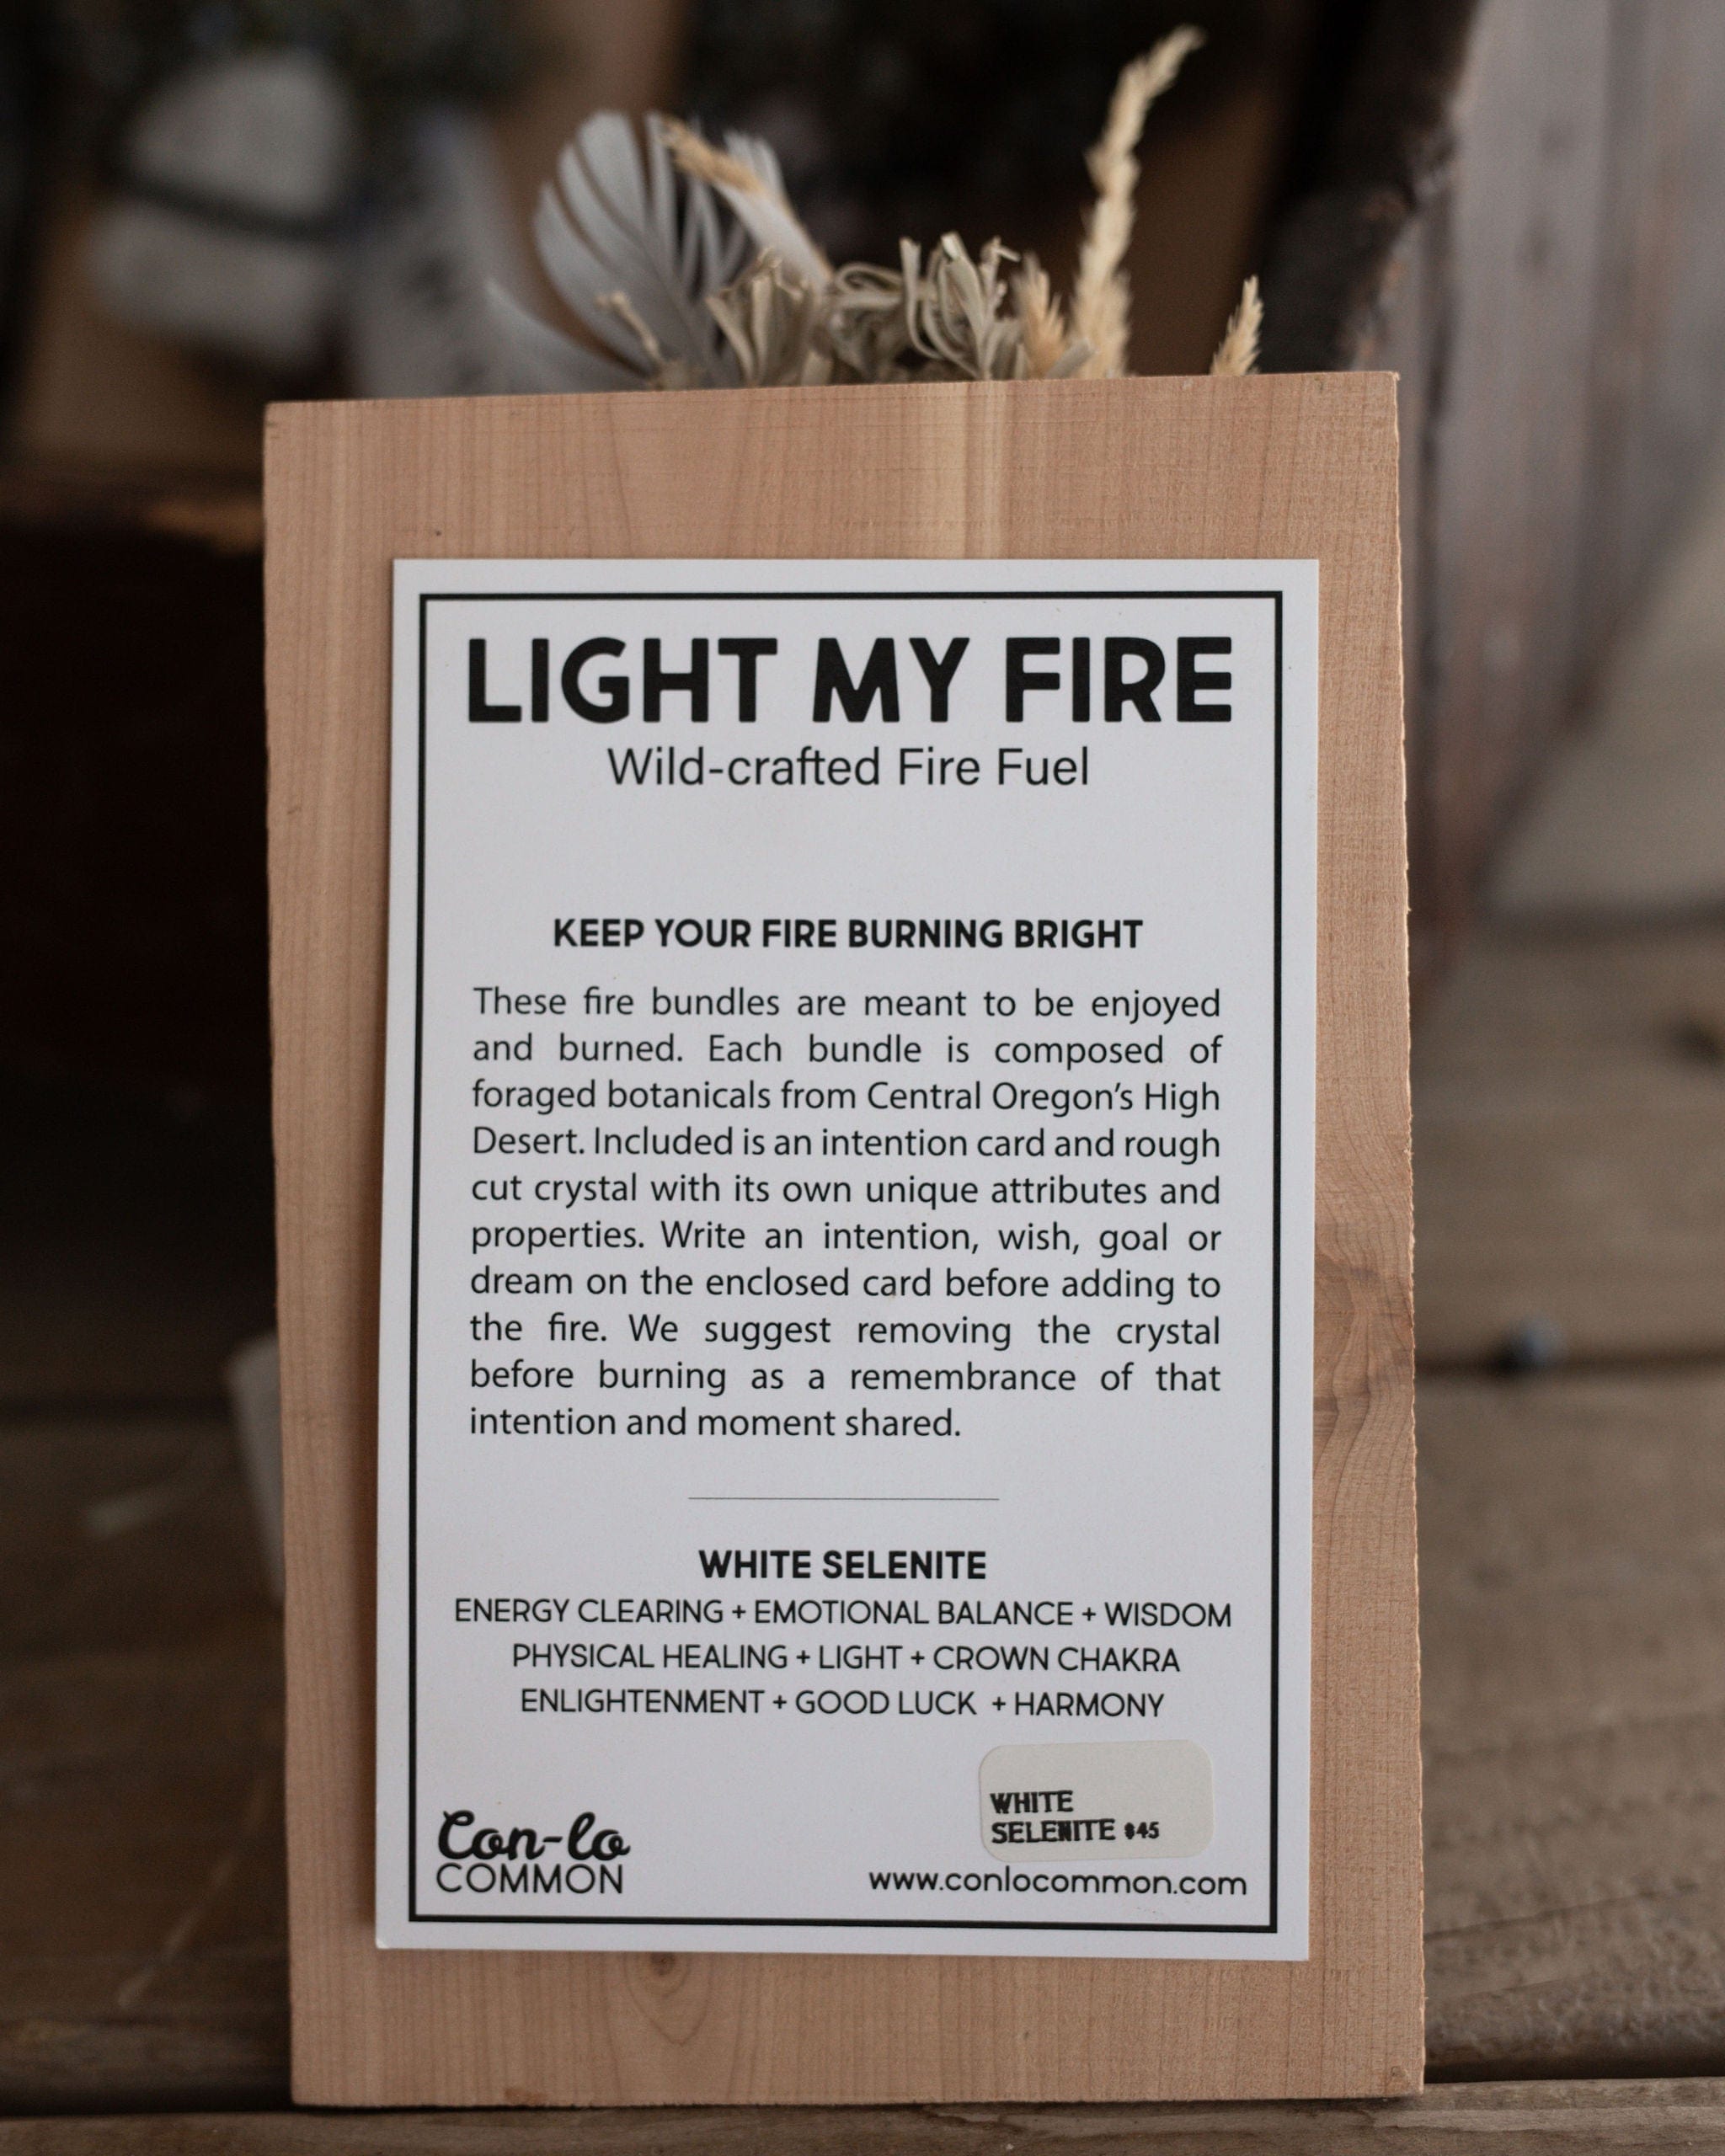 Con-lo COMMON Personal Care White Selenite - Light My Fire